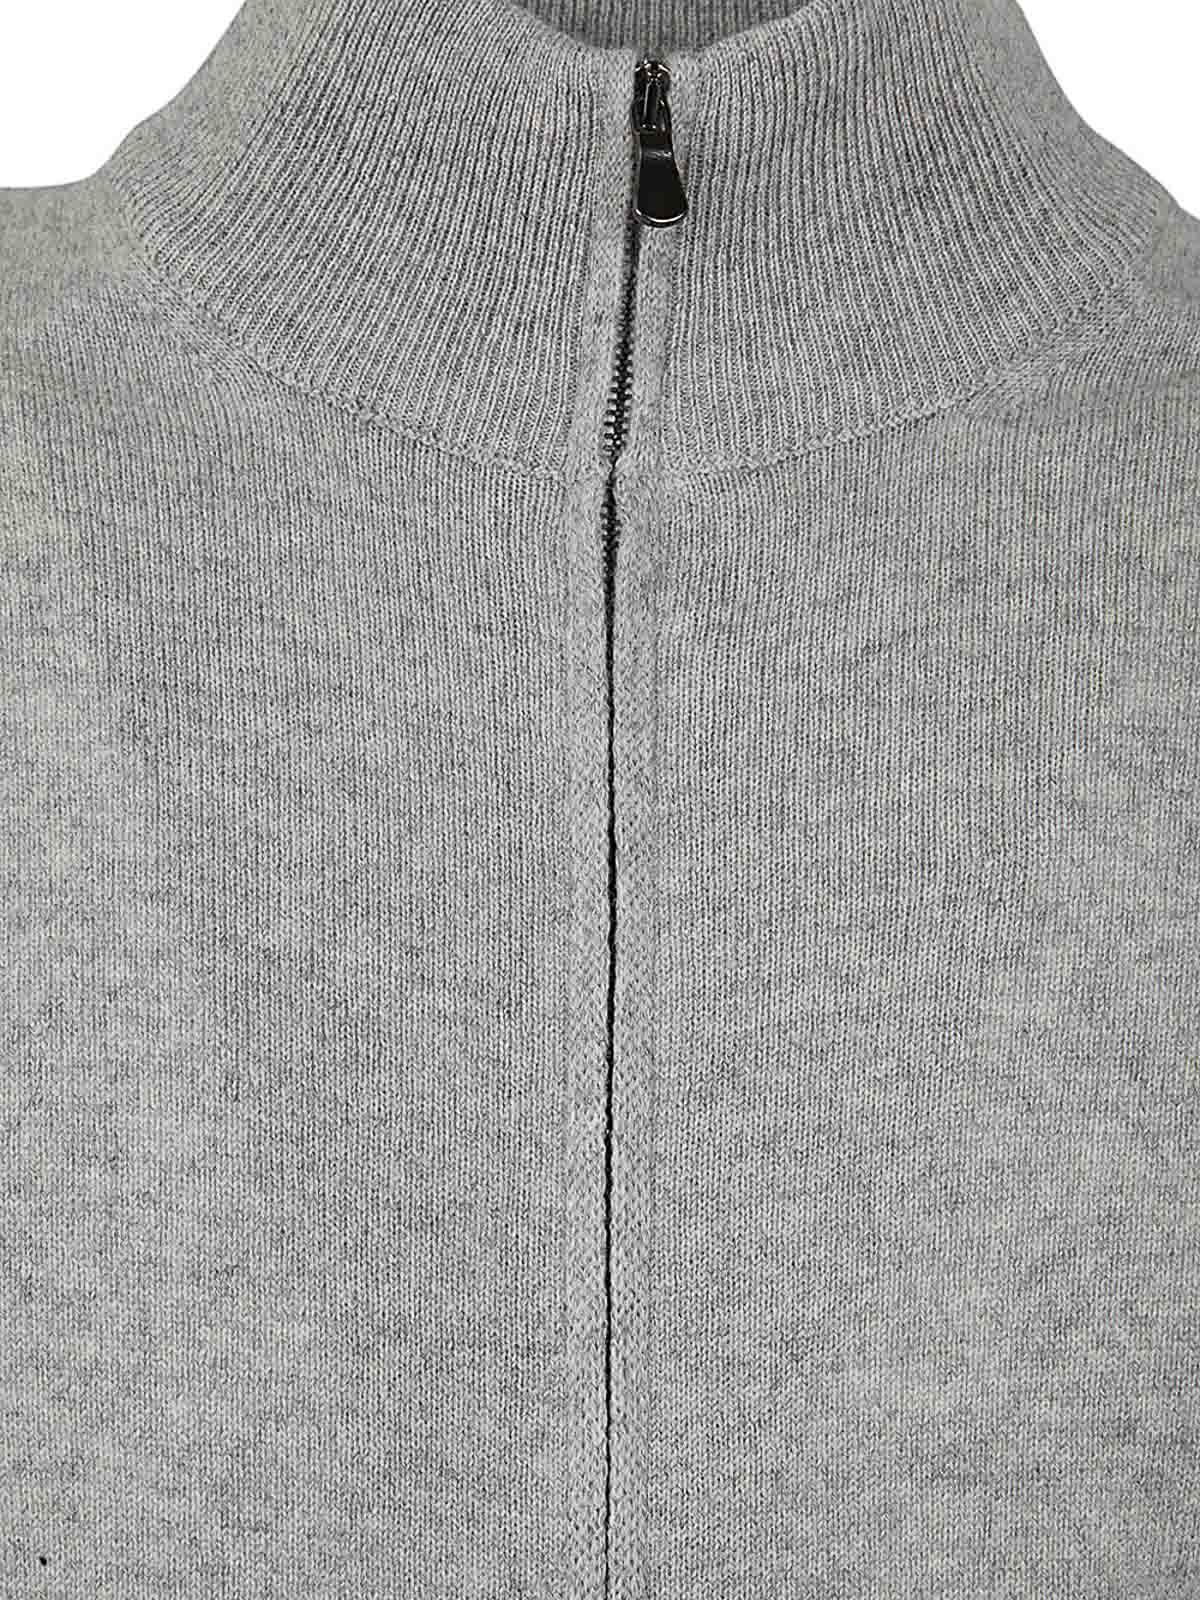 Shop Filippo De Laurentiis Full Zipped Sweater Wool Cashmere In Grey